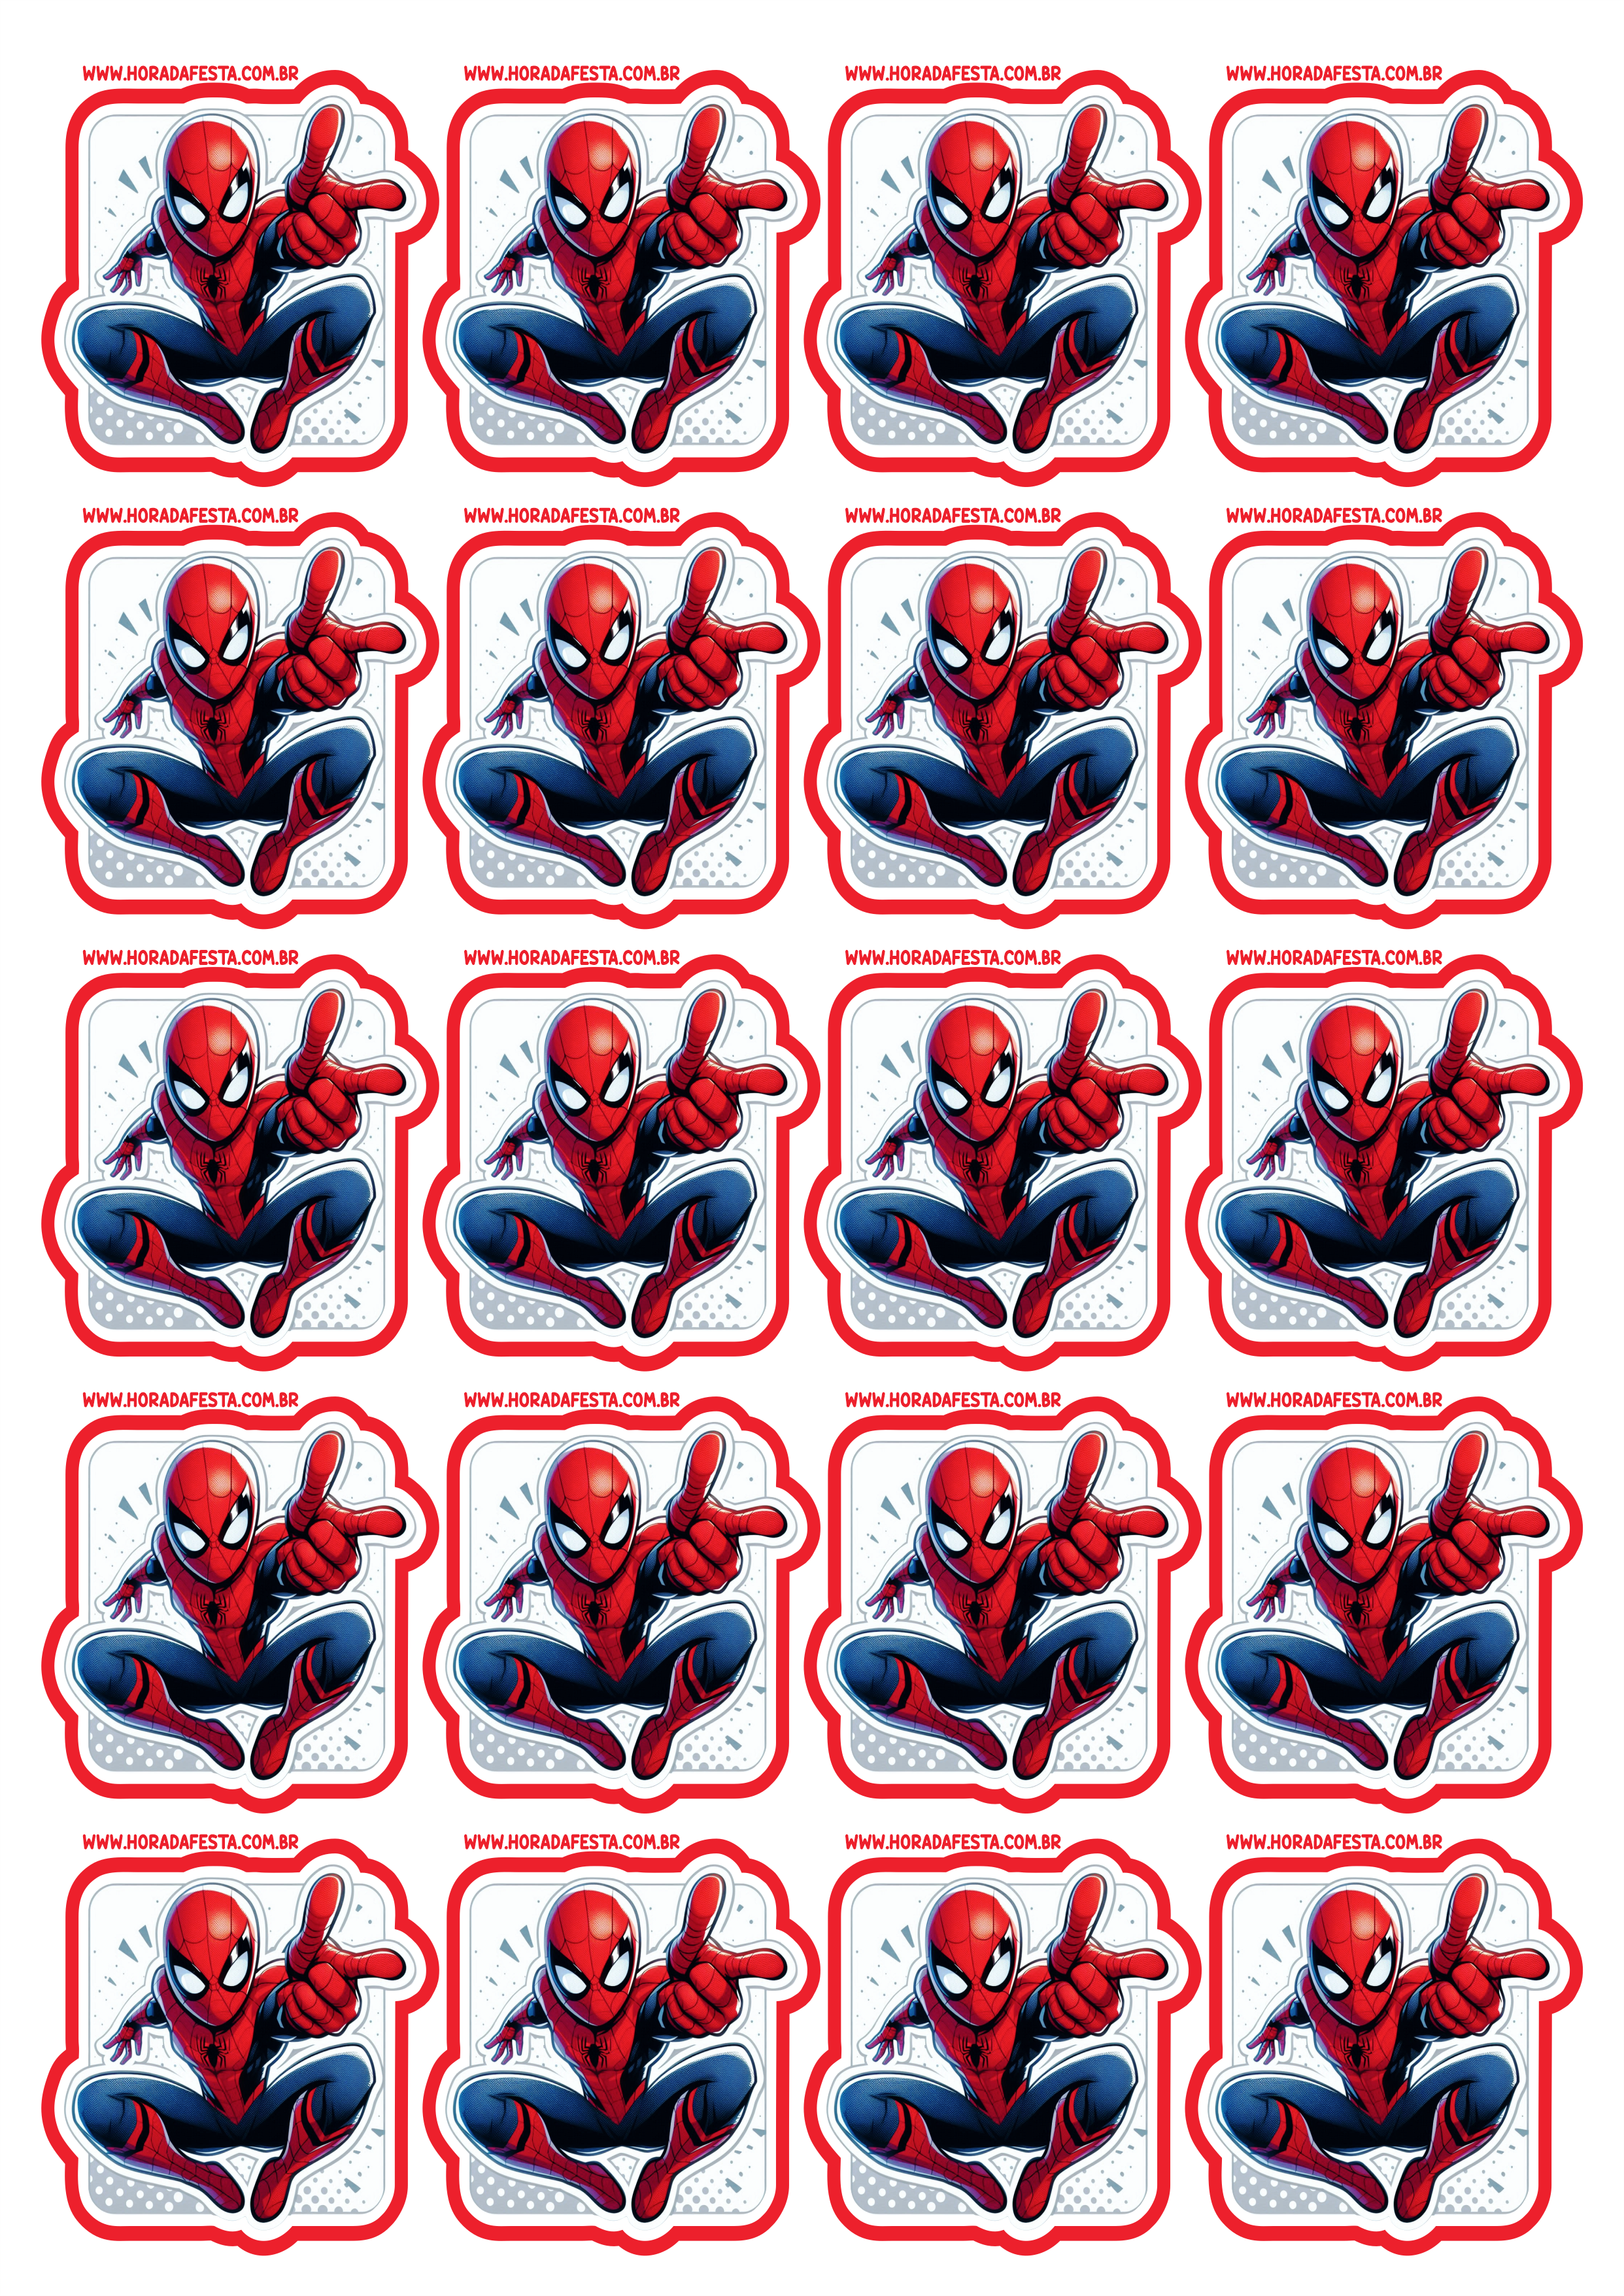 Spider-Man adesivo tag sticker decoração de aniversário e festa infantis com tema do Homem-Aranha personalizado 20 imagens png